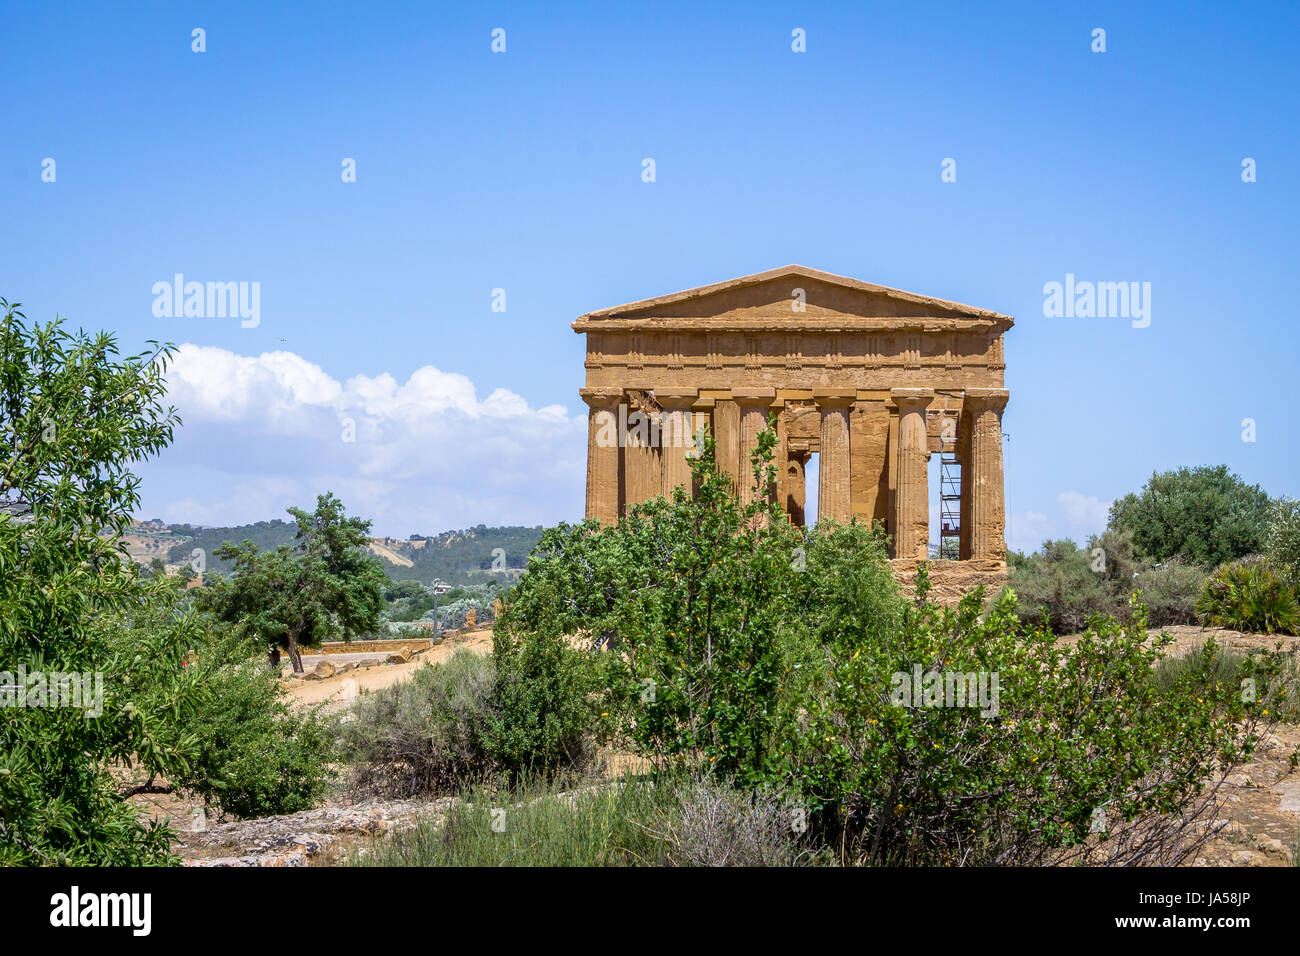 Temple of Concordia dans la Vallée des Temples - Agrigente, Sicile, Italie Banque D'Images